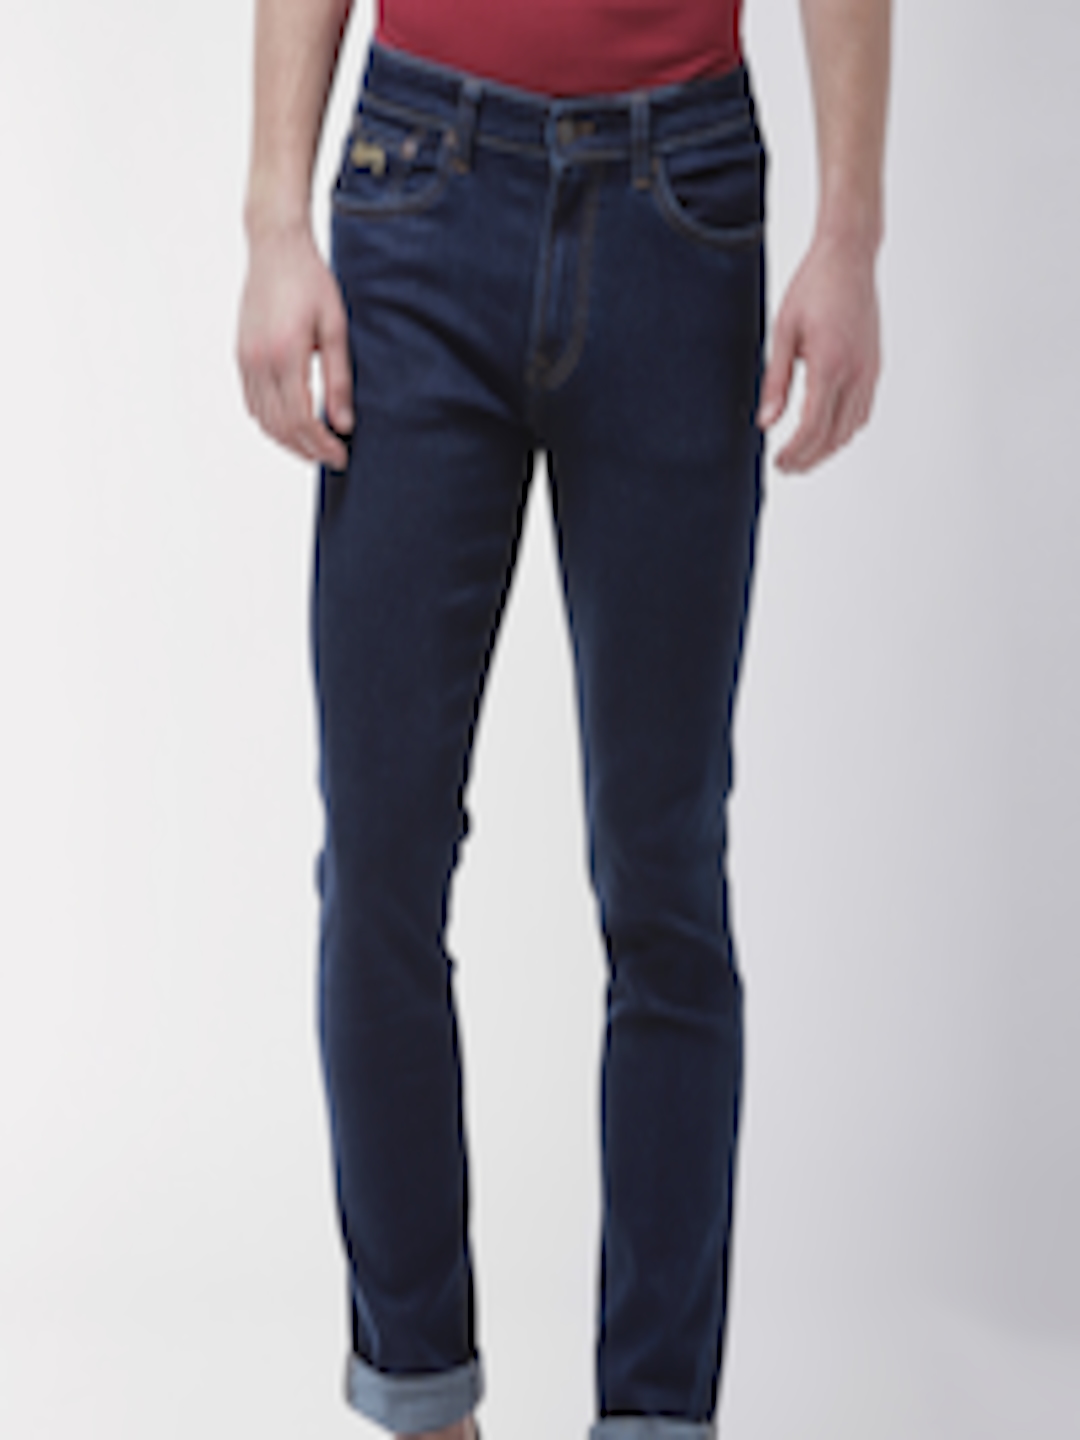 Buy Aeropostale Men Navy Blue Skinny Fit Mid Rise Clean Look Jeans ...